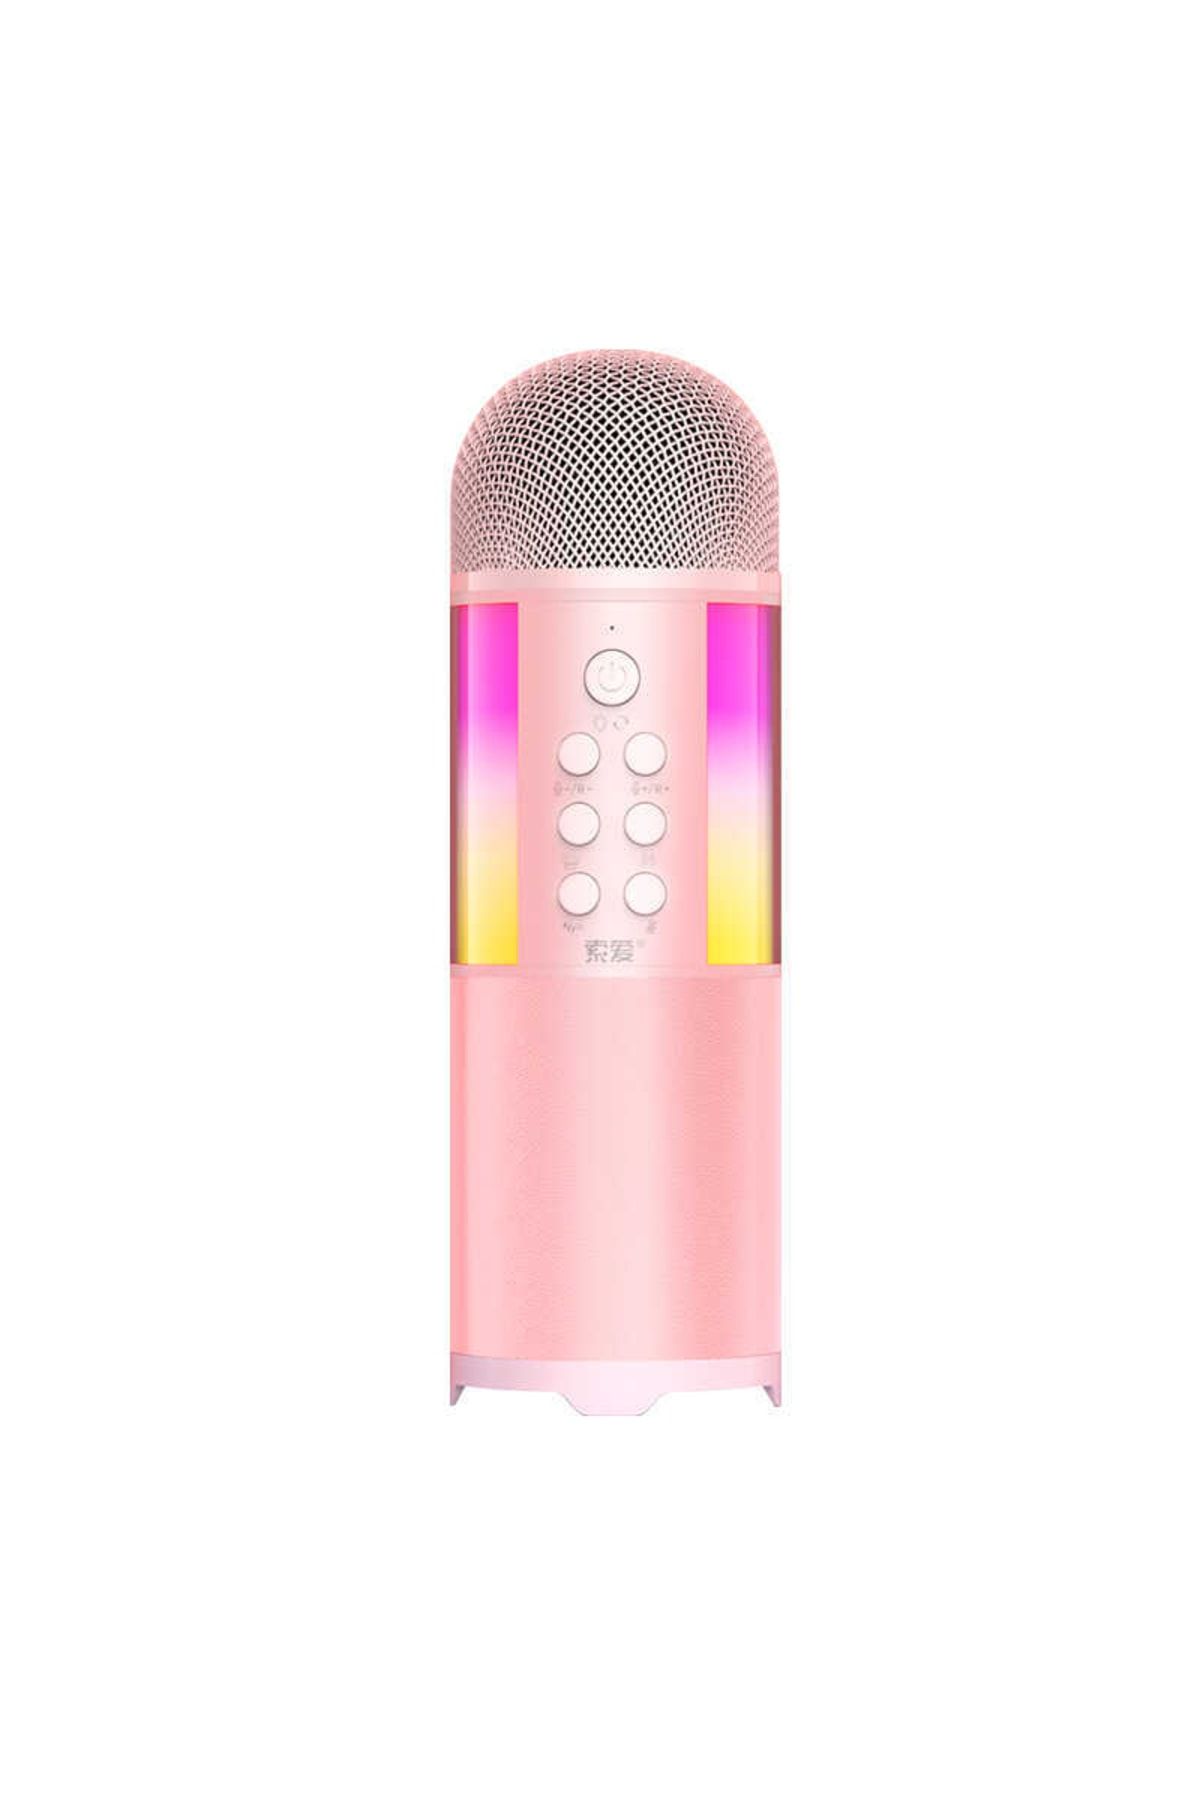 Soaiy Mc12 Karaoke Mikrofon & Bluetooth Hoparlör - Ses Kaydı - Tiz / Bass / Ses / Yankı Ayarları